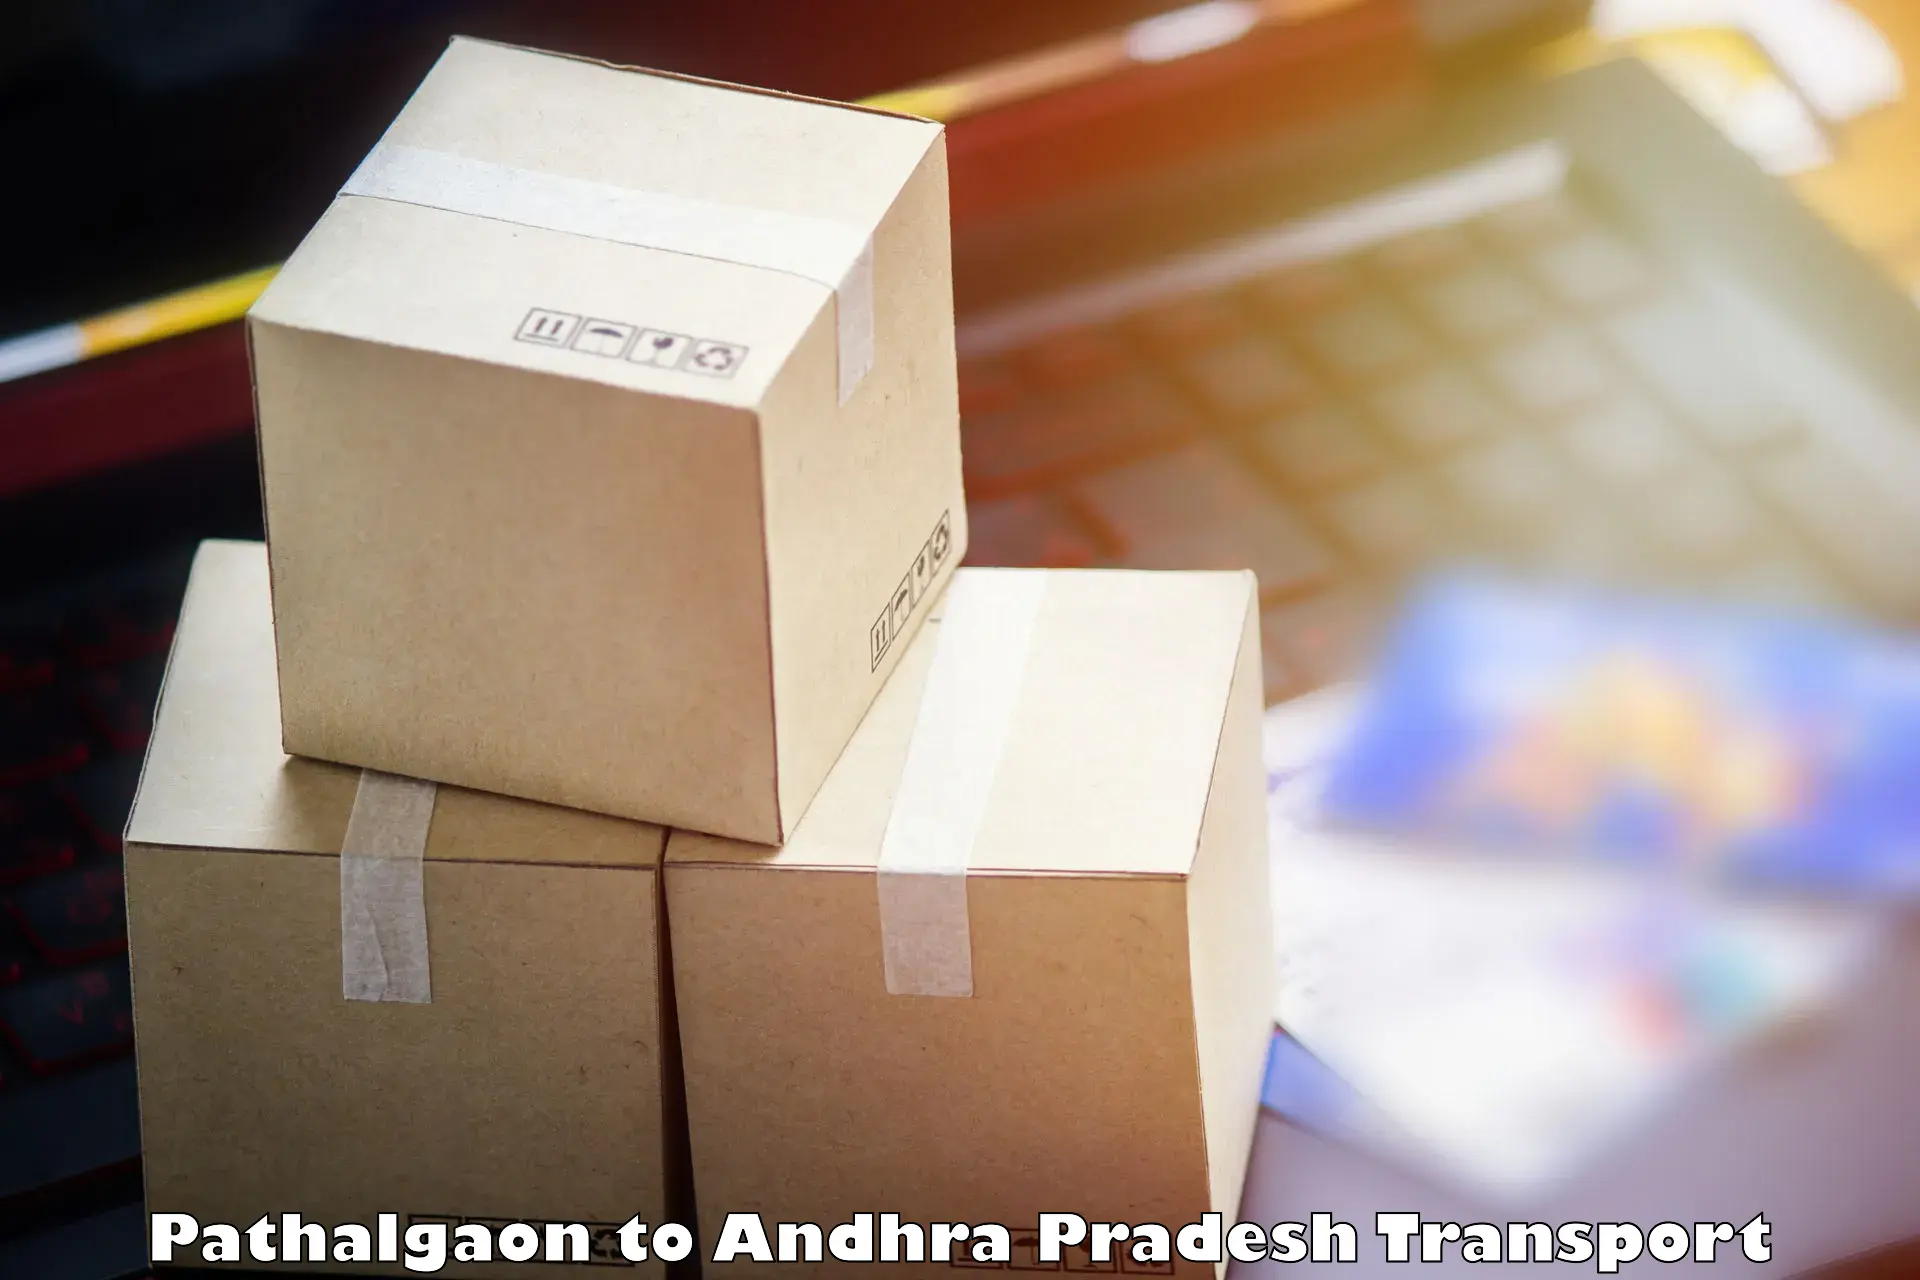 Shipping partner Pathalgaon to Piduguralla